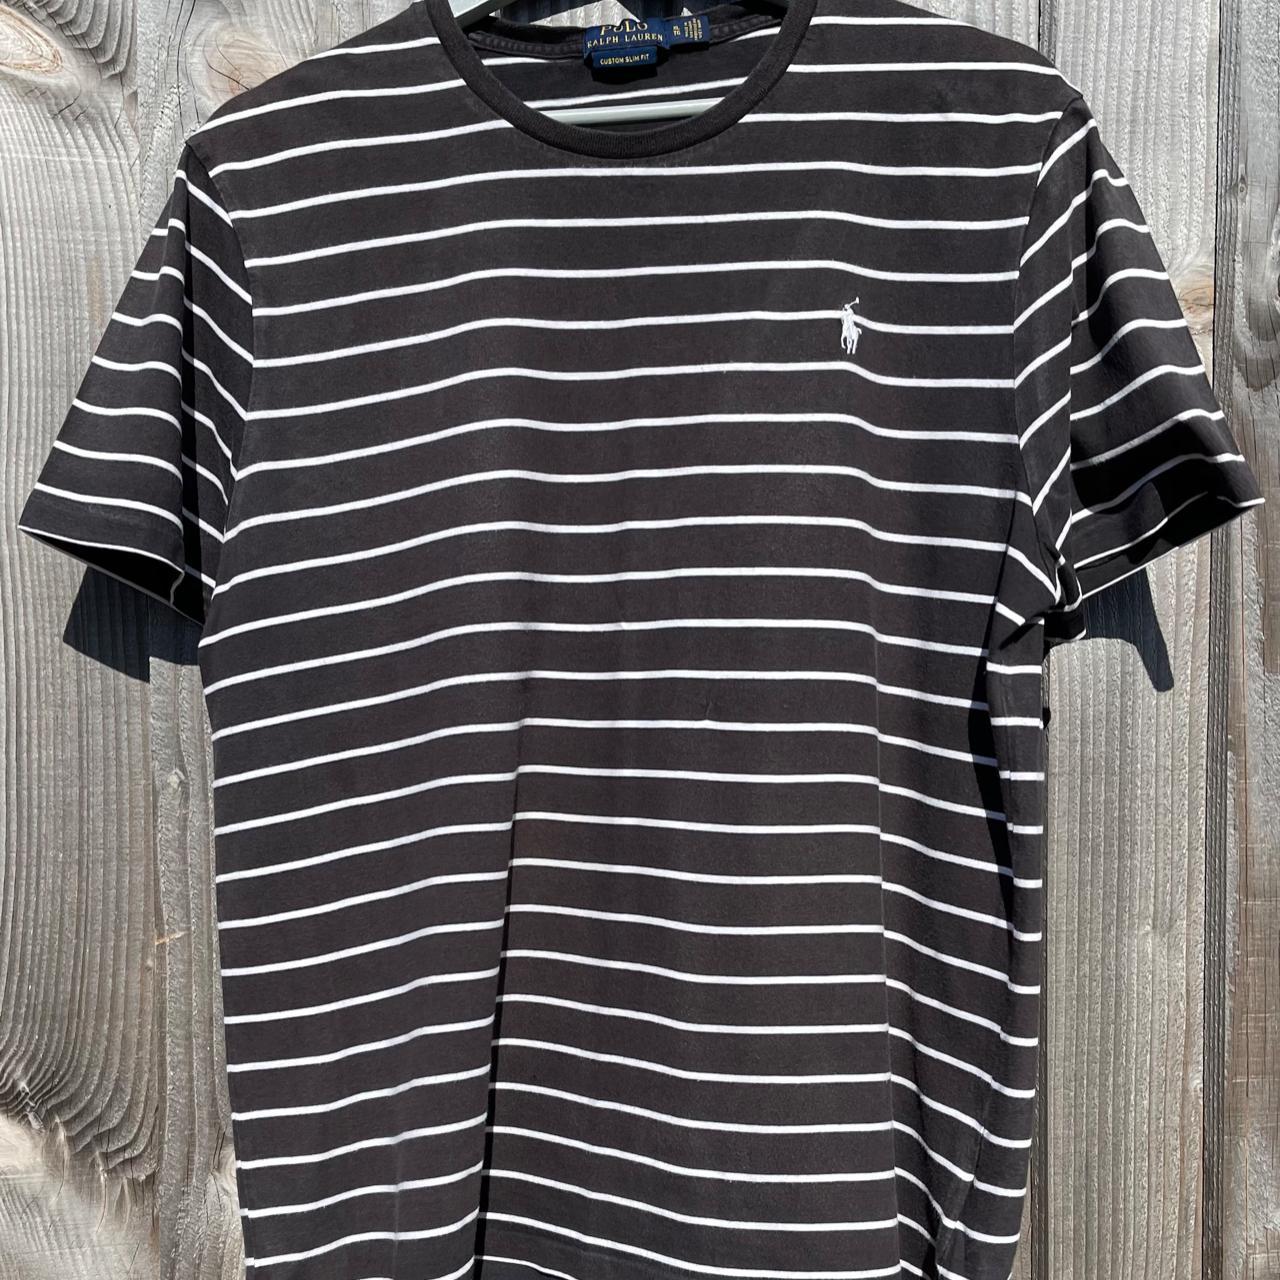 Polo Ralph Lauren Striped T-Shirt Excellent... - Depop